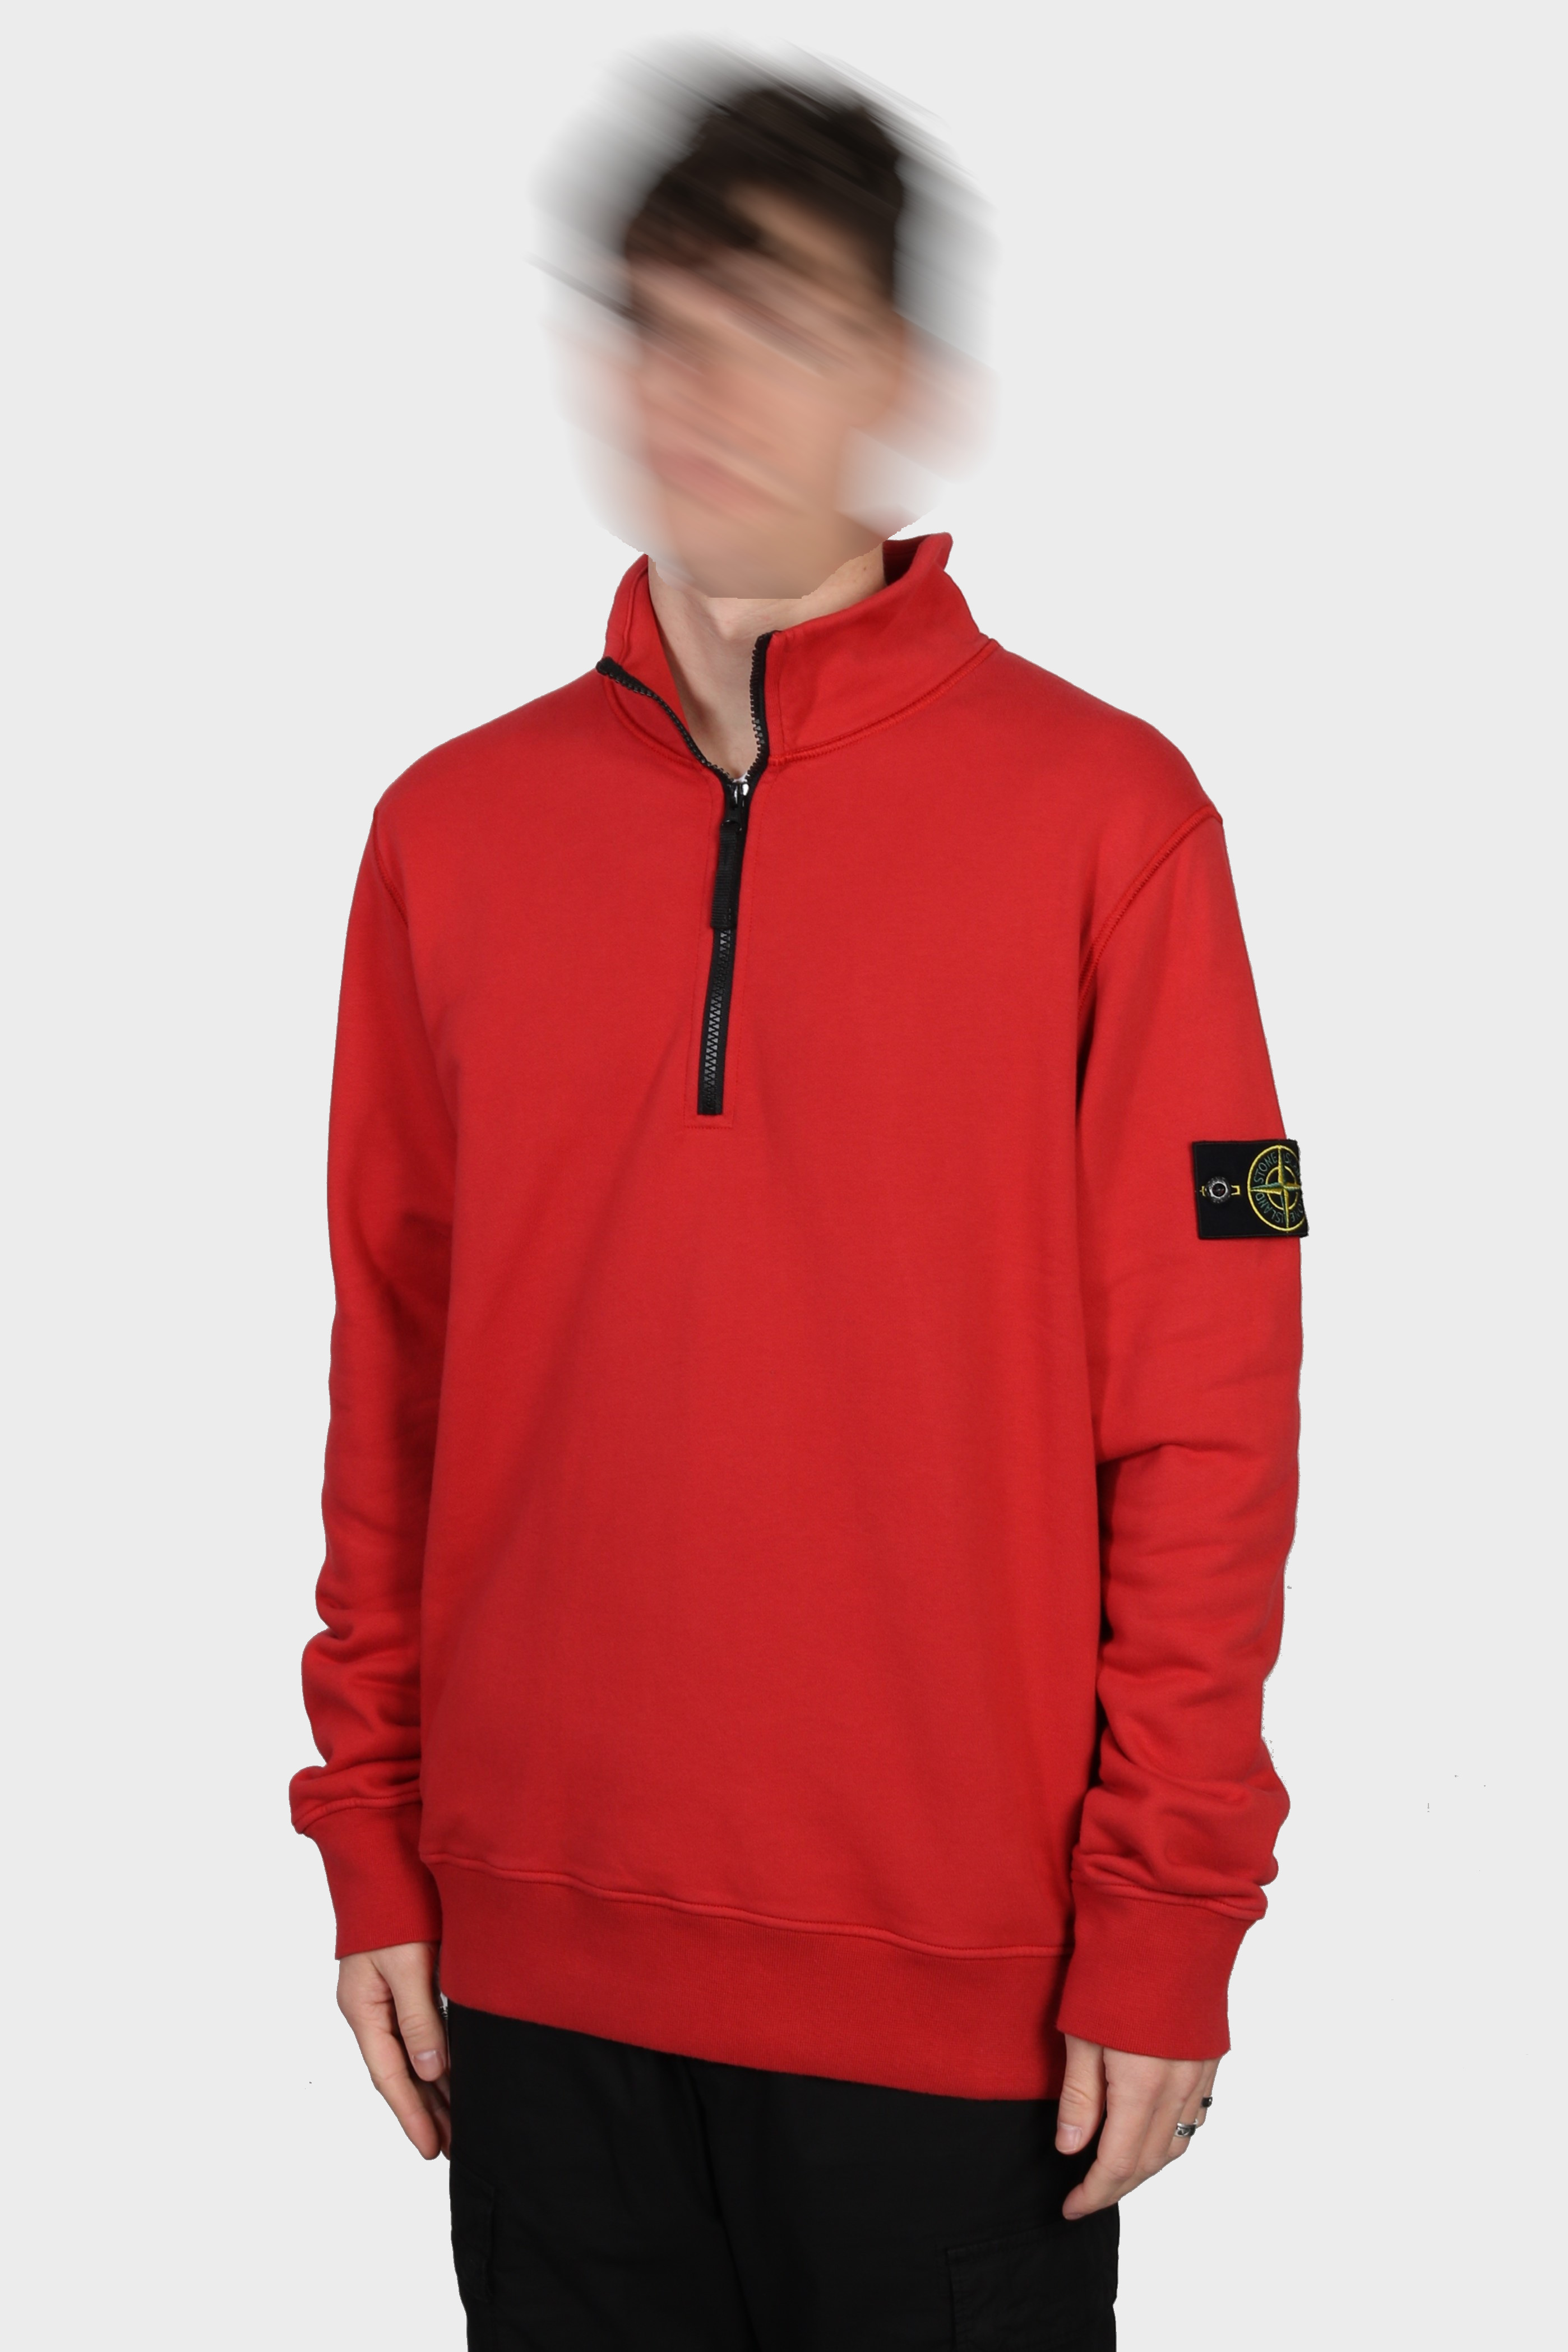 STONE ISLAND Half Zip Sweatshirt in Red S